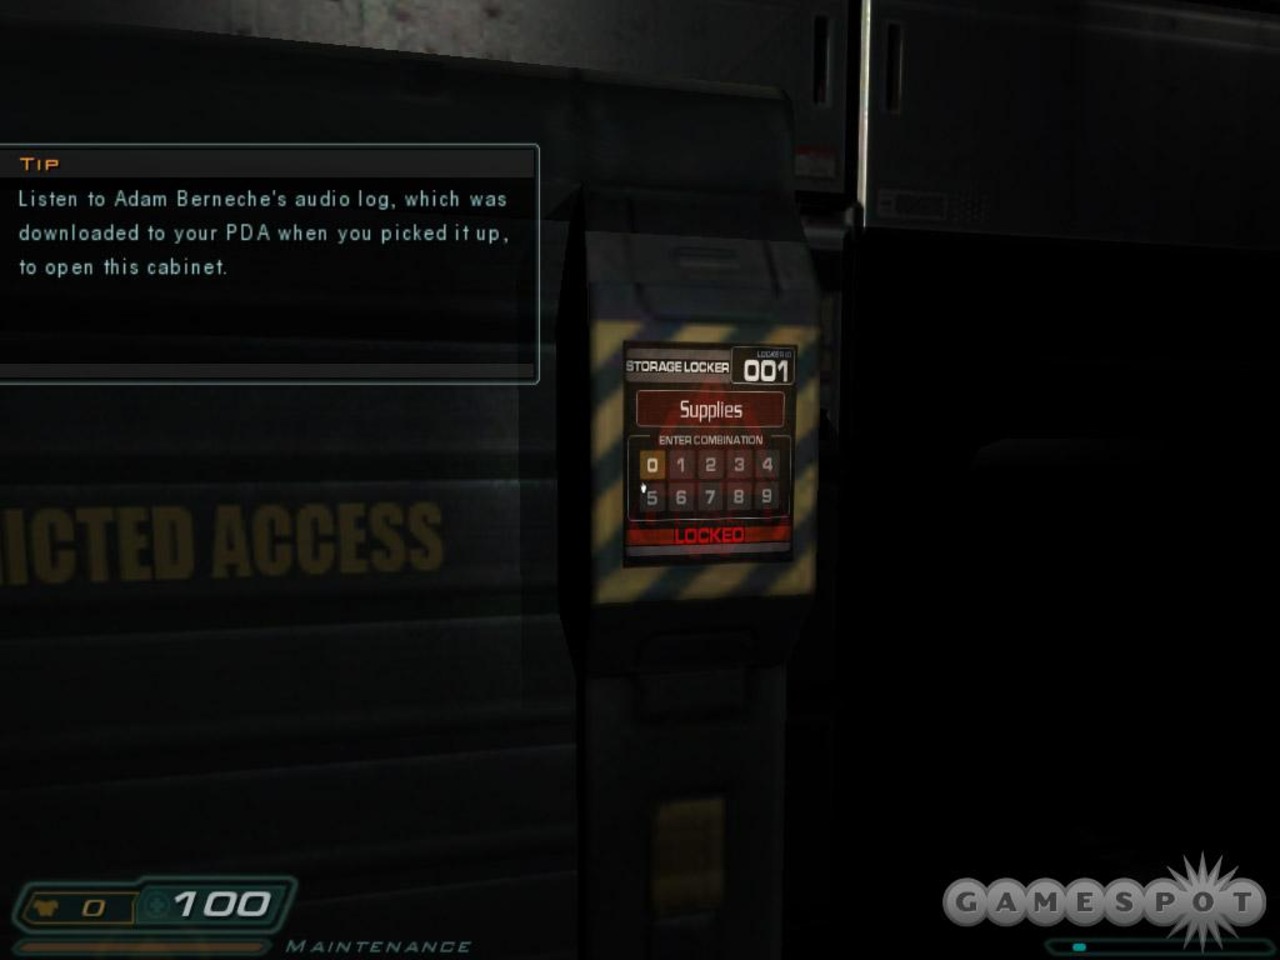 Doomsday игра коды. Doom 3 складской шкаф 023. Пароли от ящиков в игре Doom 3. Коды от шкафчиков дум 3. Складской шкаф 003 дум 3.